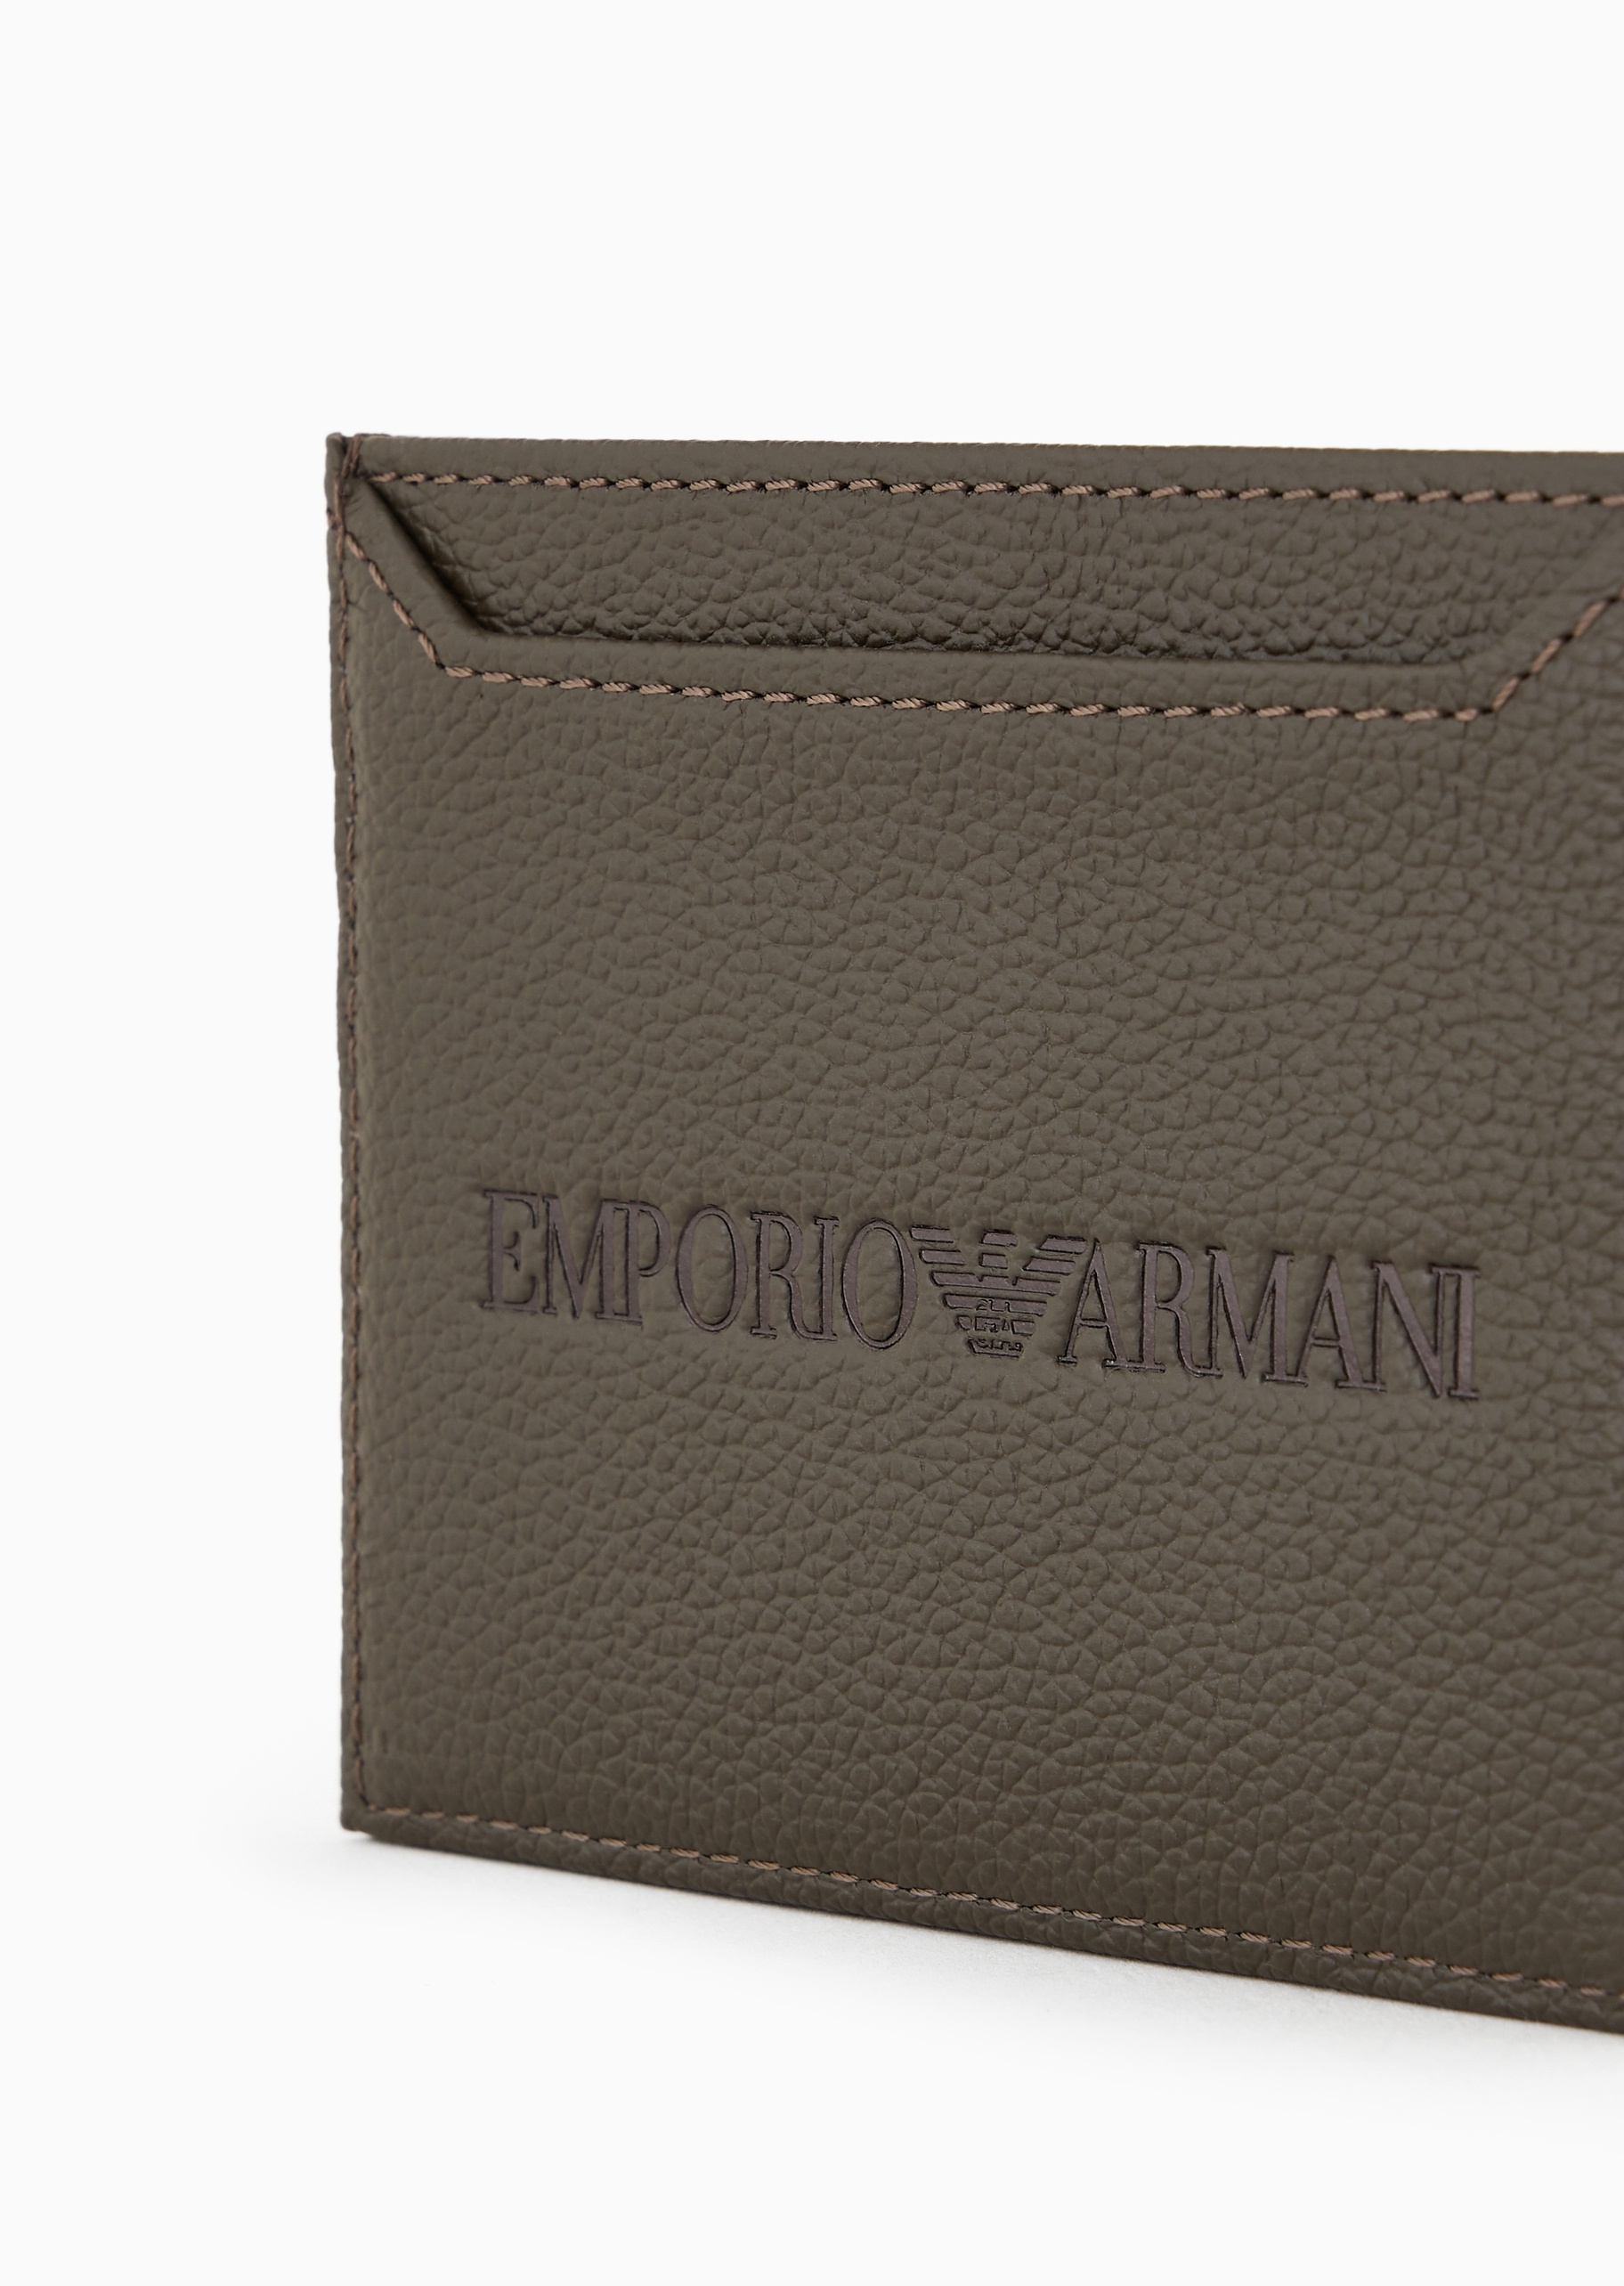 Emporio Armani 男士牛皮革扁平多卡位纯色手拿卡夹